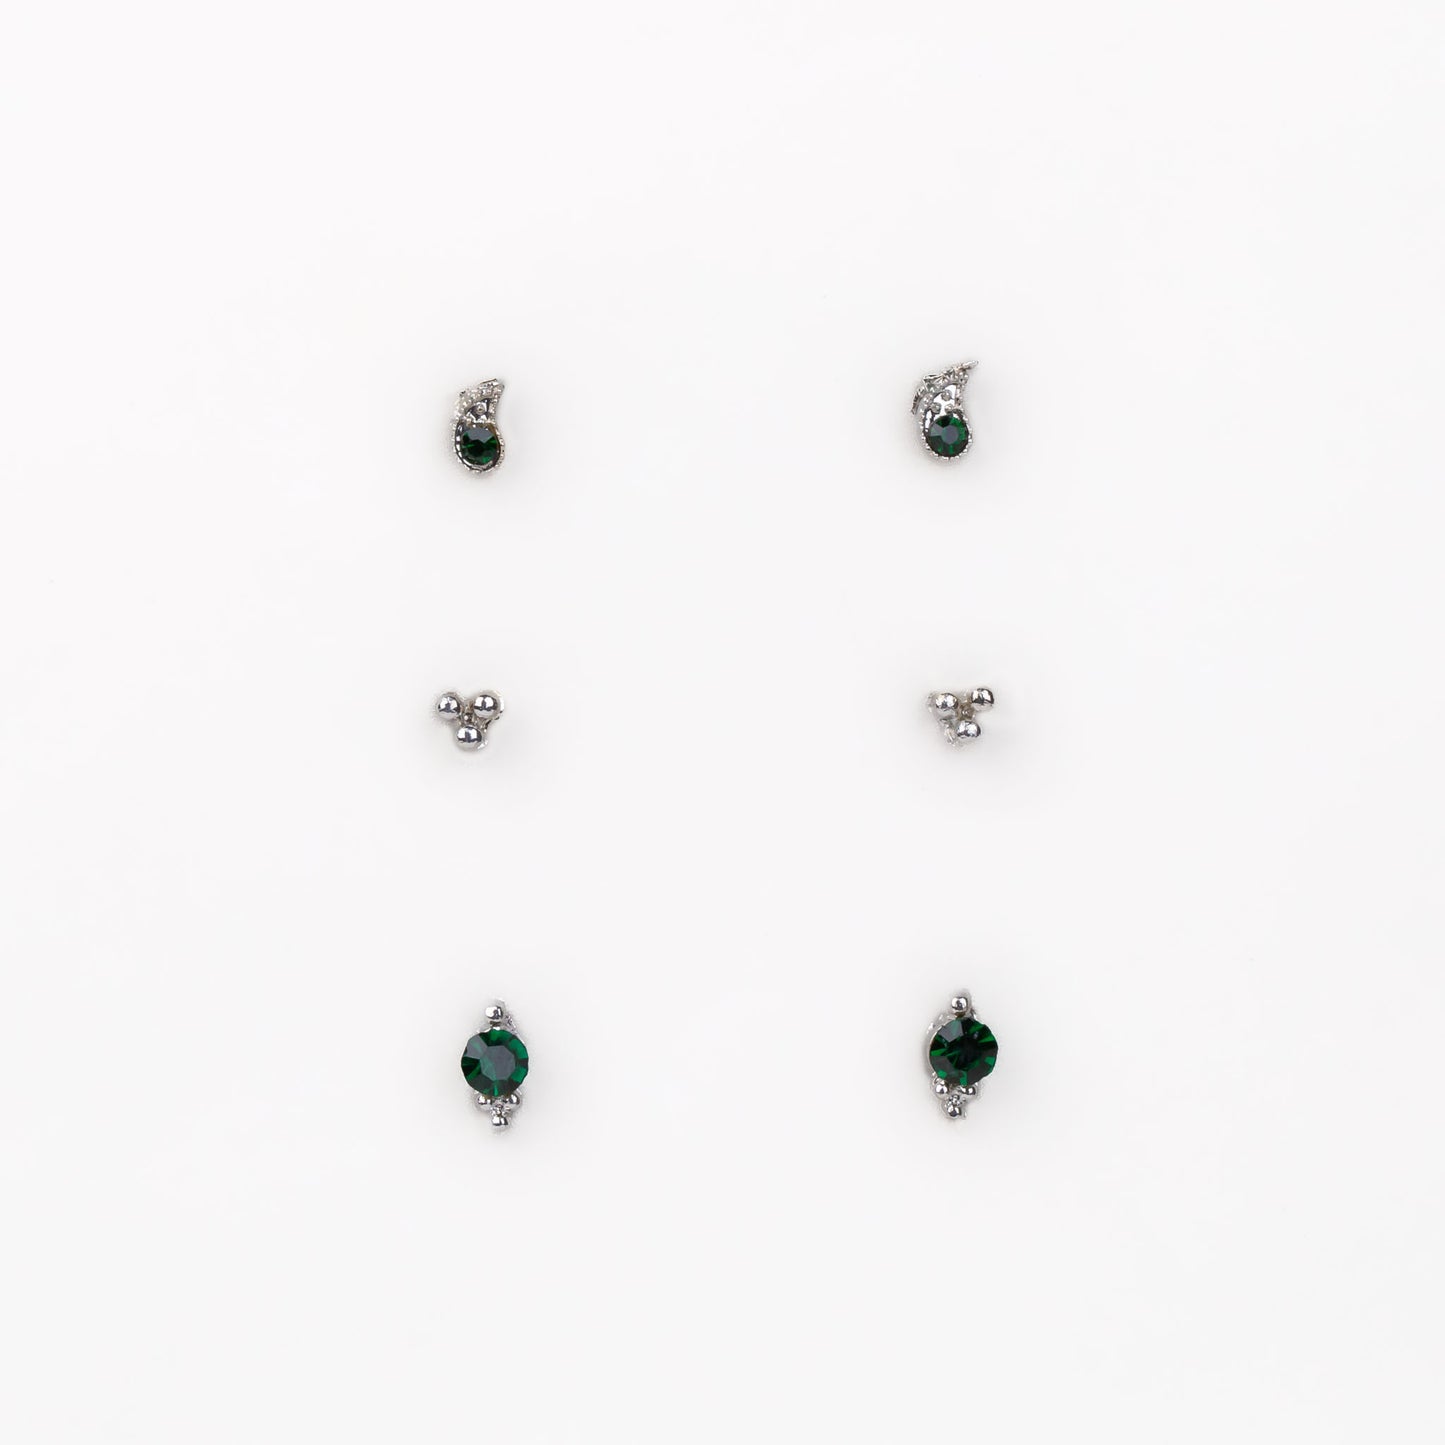 Cercei mici discreți cu formă de lacrimă, amuletă și pietre, set 3 perechi - Verde Închis